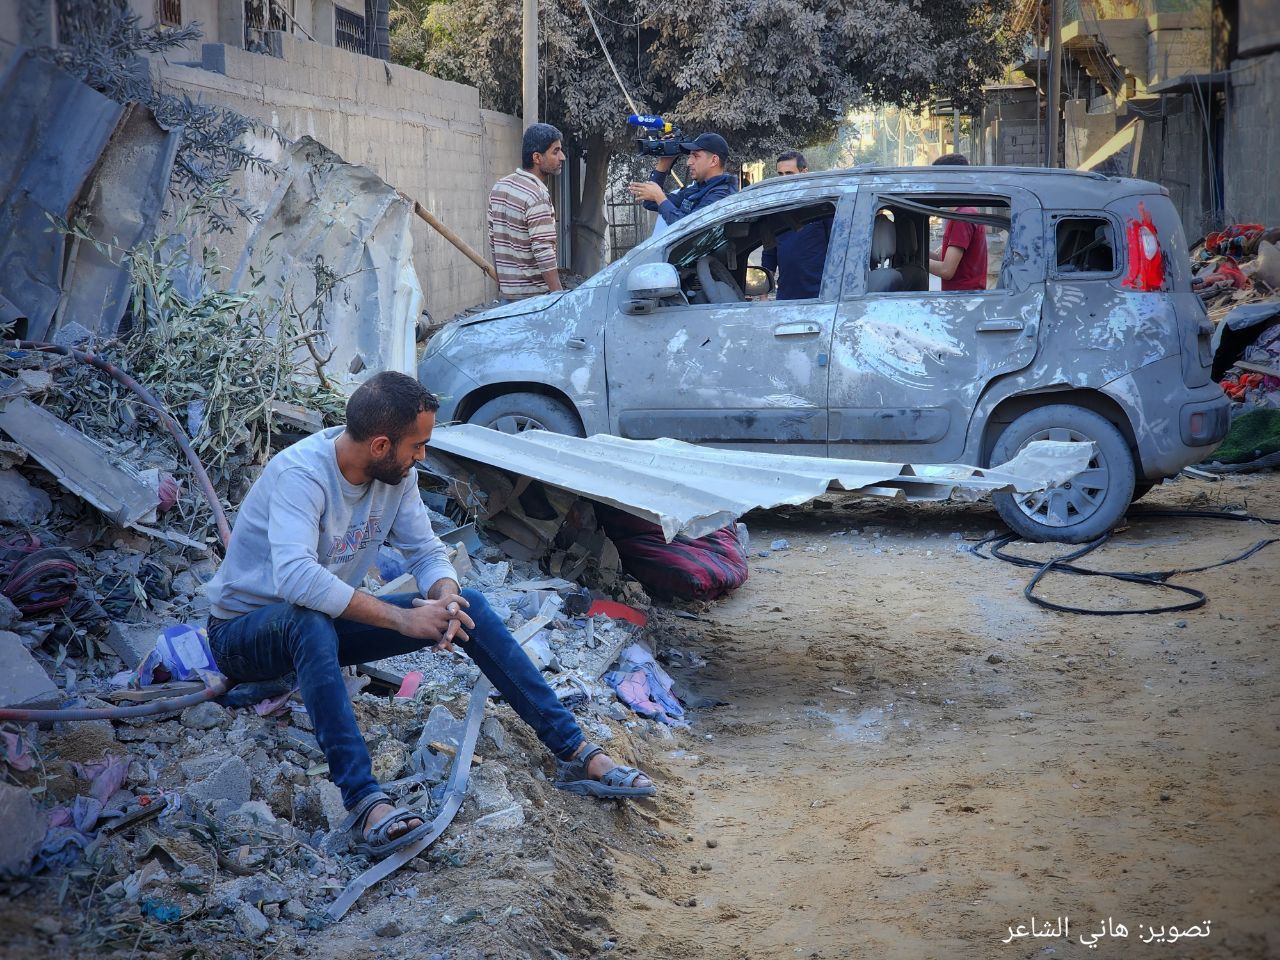 غزة : صور بعد المجزرة  3200 قتيل في غزة معظمهم من الأطفال و 11 الف جريح